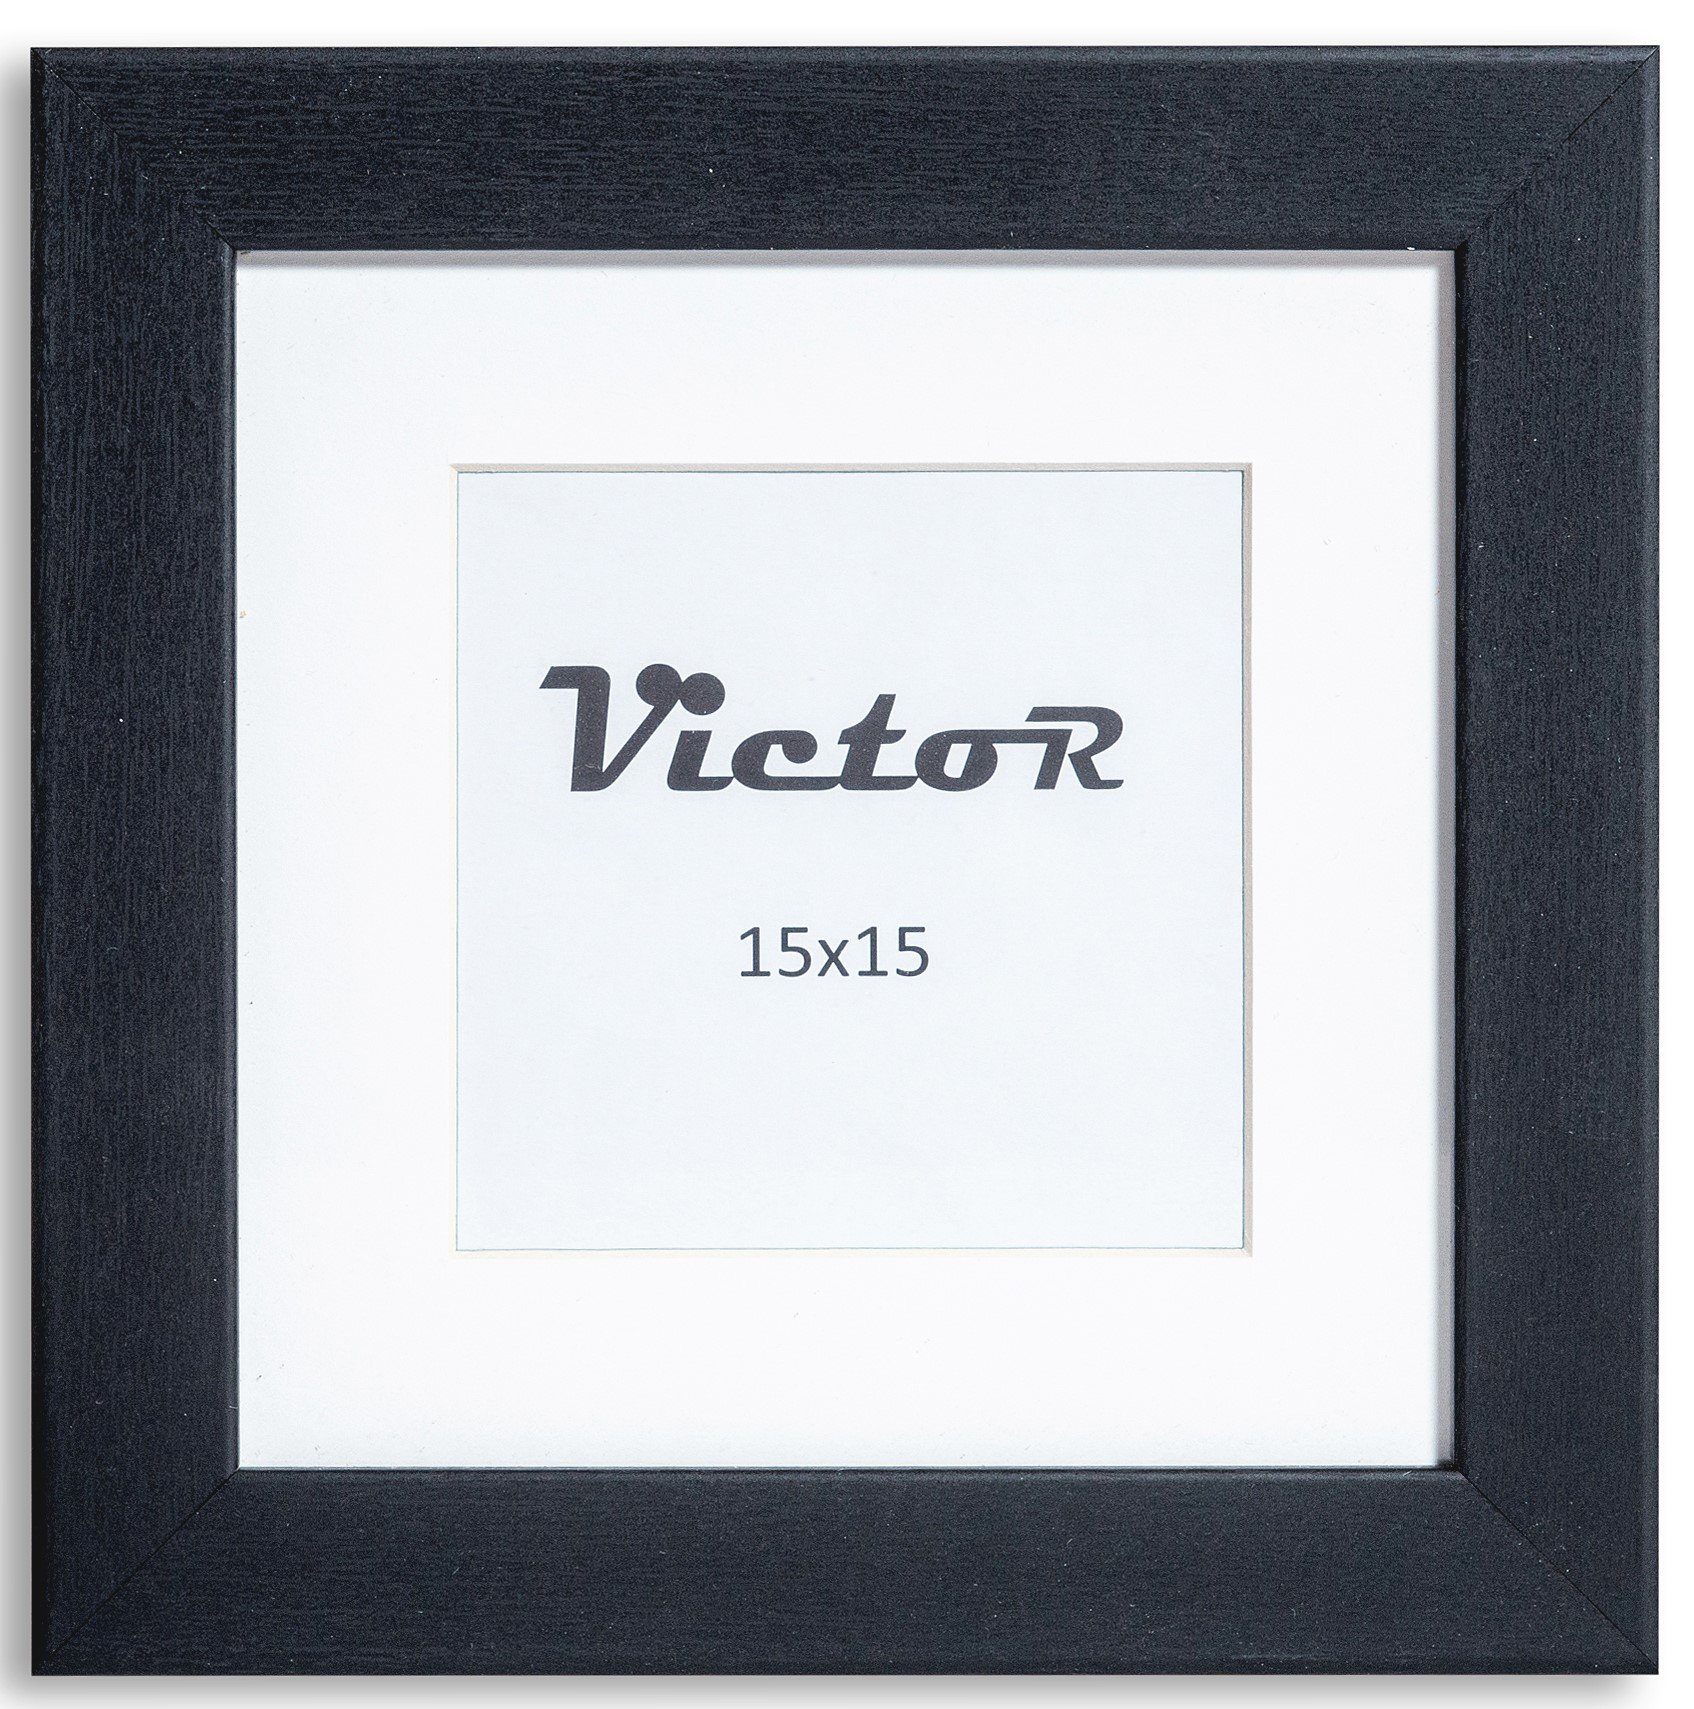 Victor (Zenith) Bilderrahmen Richter, Bilderrahmen Schwarz 15x15 cm mit 10x10 cm Passepartout, Holz